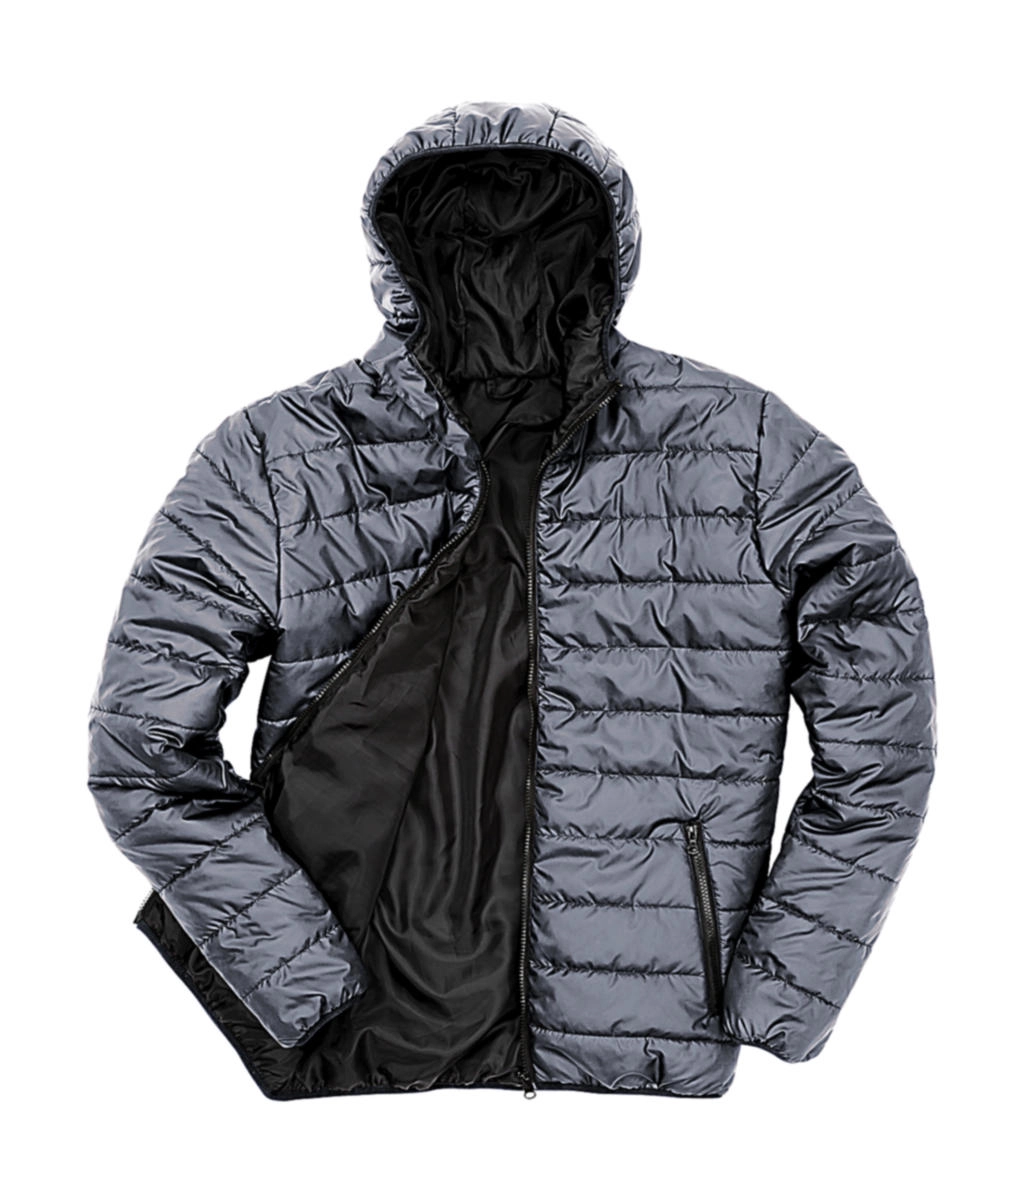 Soft Padded Jacket zum Besticken und Bedrucken in der Farbe Frost Grey/Black mit Ihren Logo, Schriftzug oder Motiv.